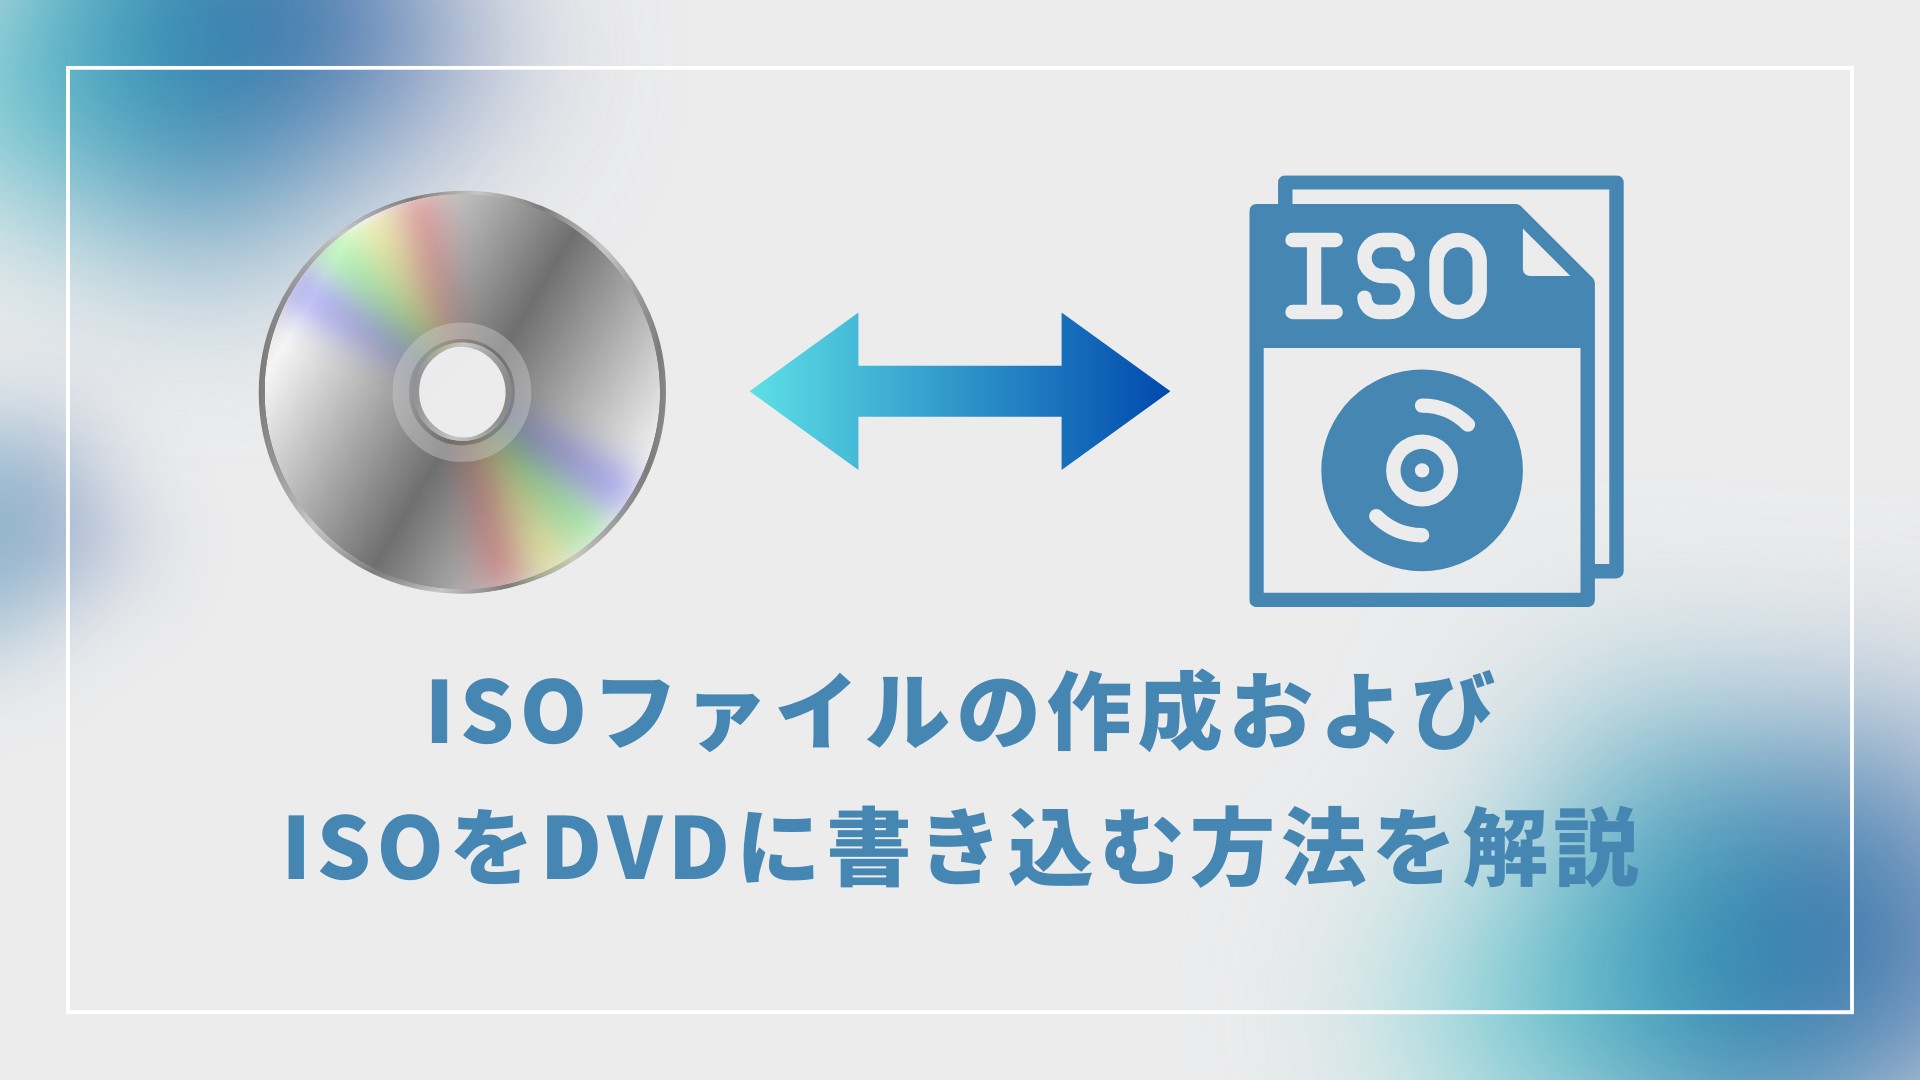 ISOファイルの作成およびISOをDVDに書き込む方法を解説